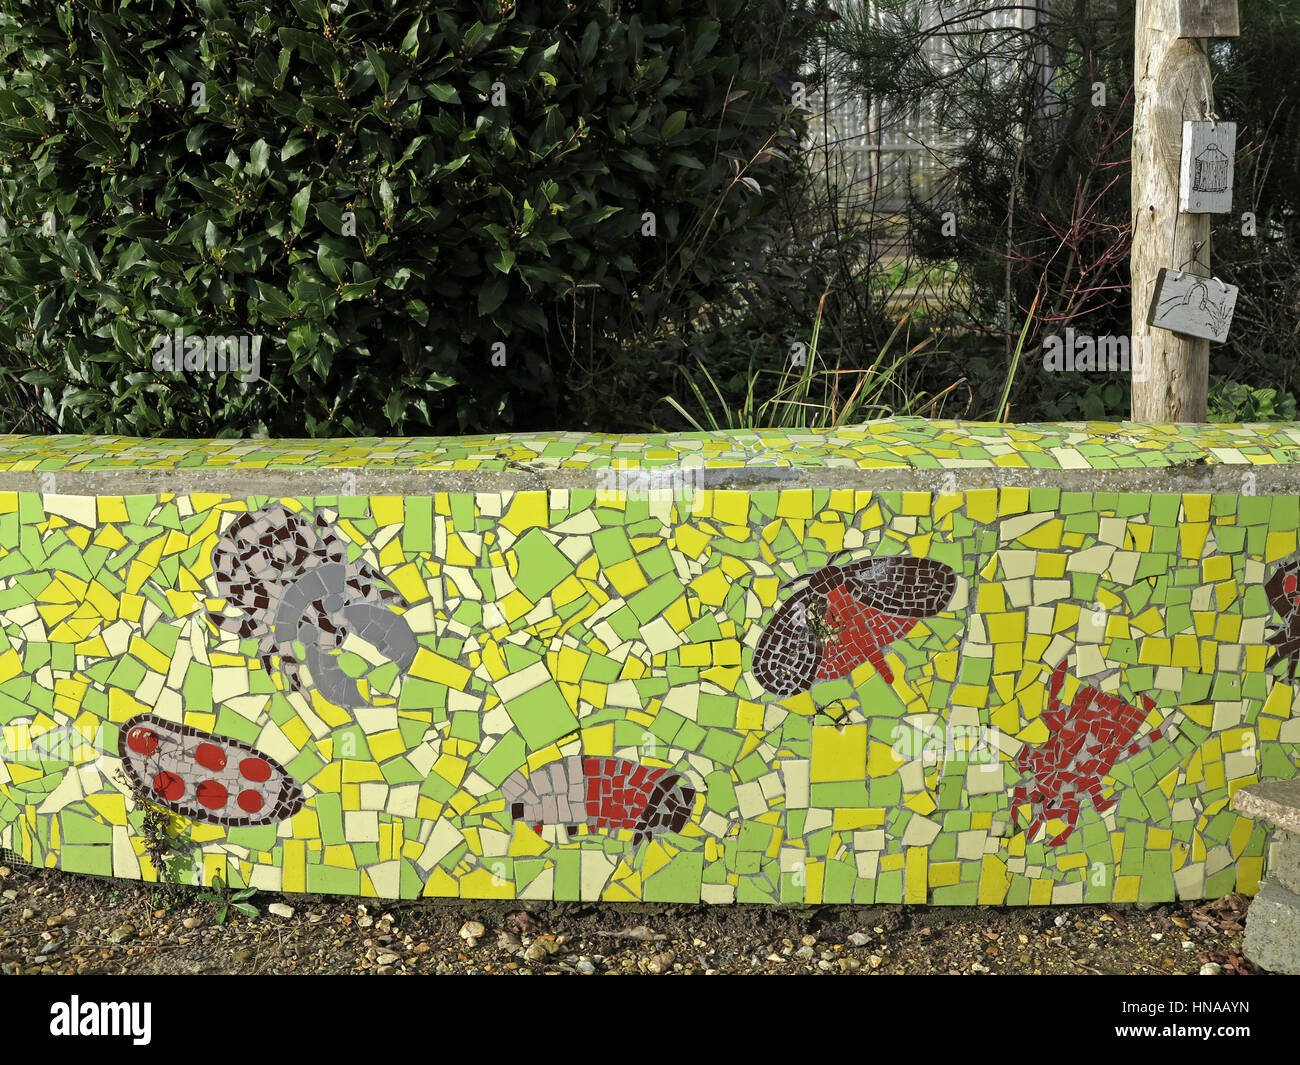 Grüne Mosaik Gartenmauer mit Libellen und Schmetterlingen verziert  Stockfotografie - Alamy